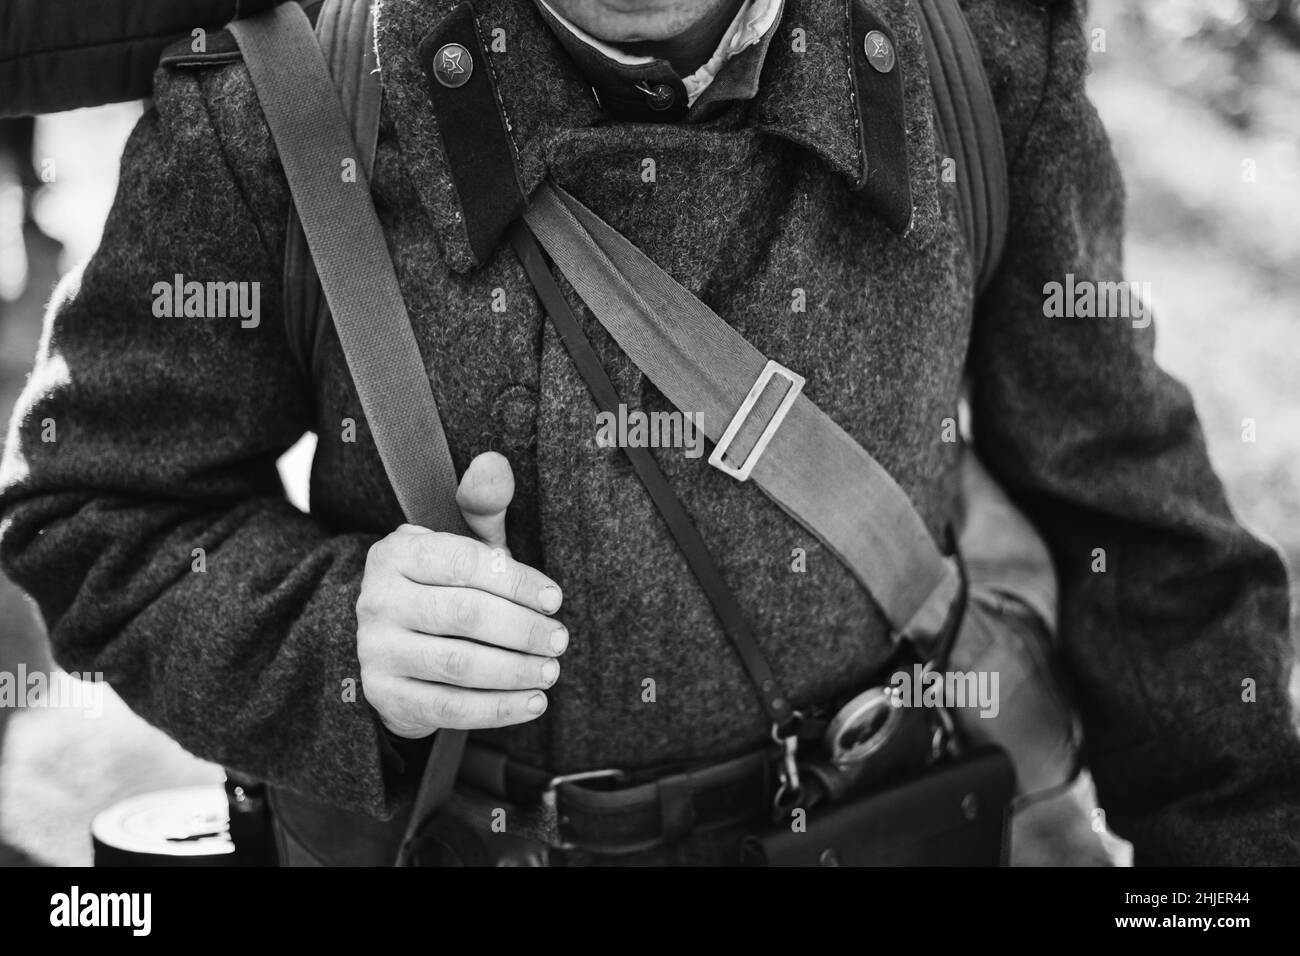 Mann-Re-enactor, gekleidet als Soldat der sowjetischen russischen Roten Armee im Zweiten Weltkrieg. Russische Overcoat Uniform im Zweiten Weltkrieg WW2 mal. Foto In Schwarzweiß Stockfoto